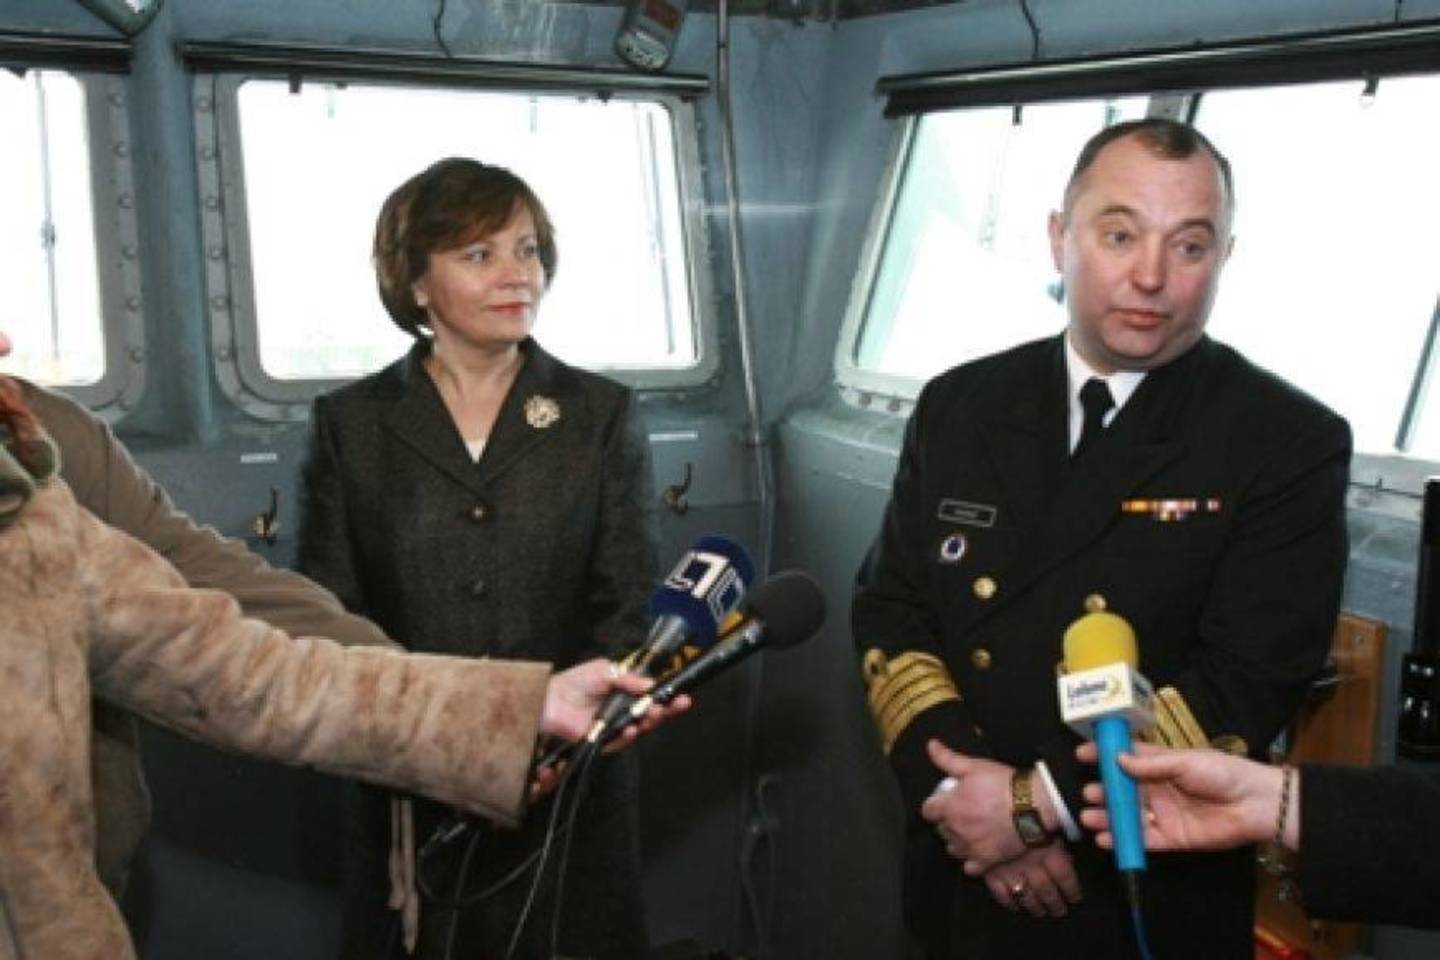  Buvusi krašto apsaugos ministrė R.Juknevičienė pasistengė, kad Lietuvos karinių jūrų pajėgų vadas O.Mariničius greičiau būtų išlydėtas į atsargą.